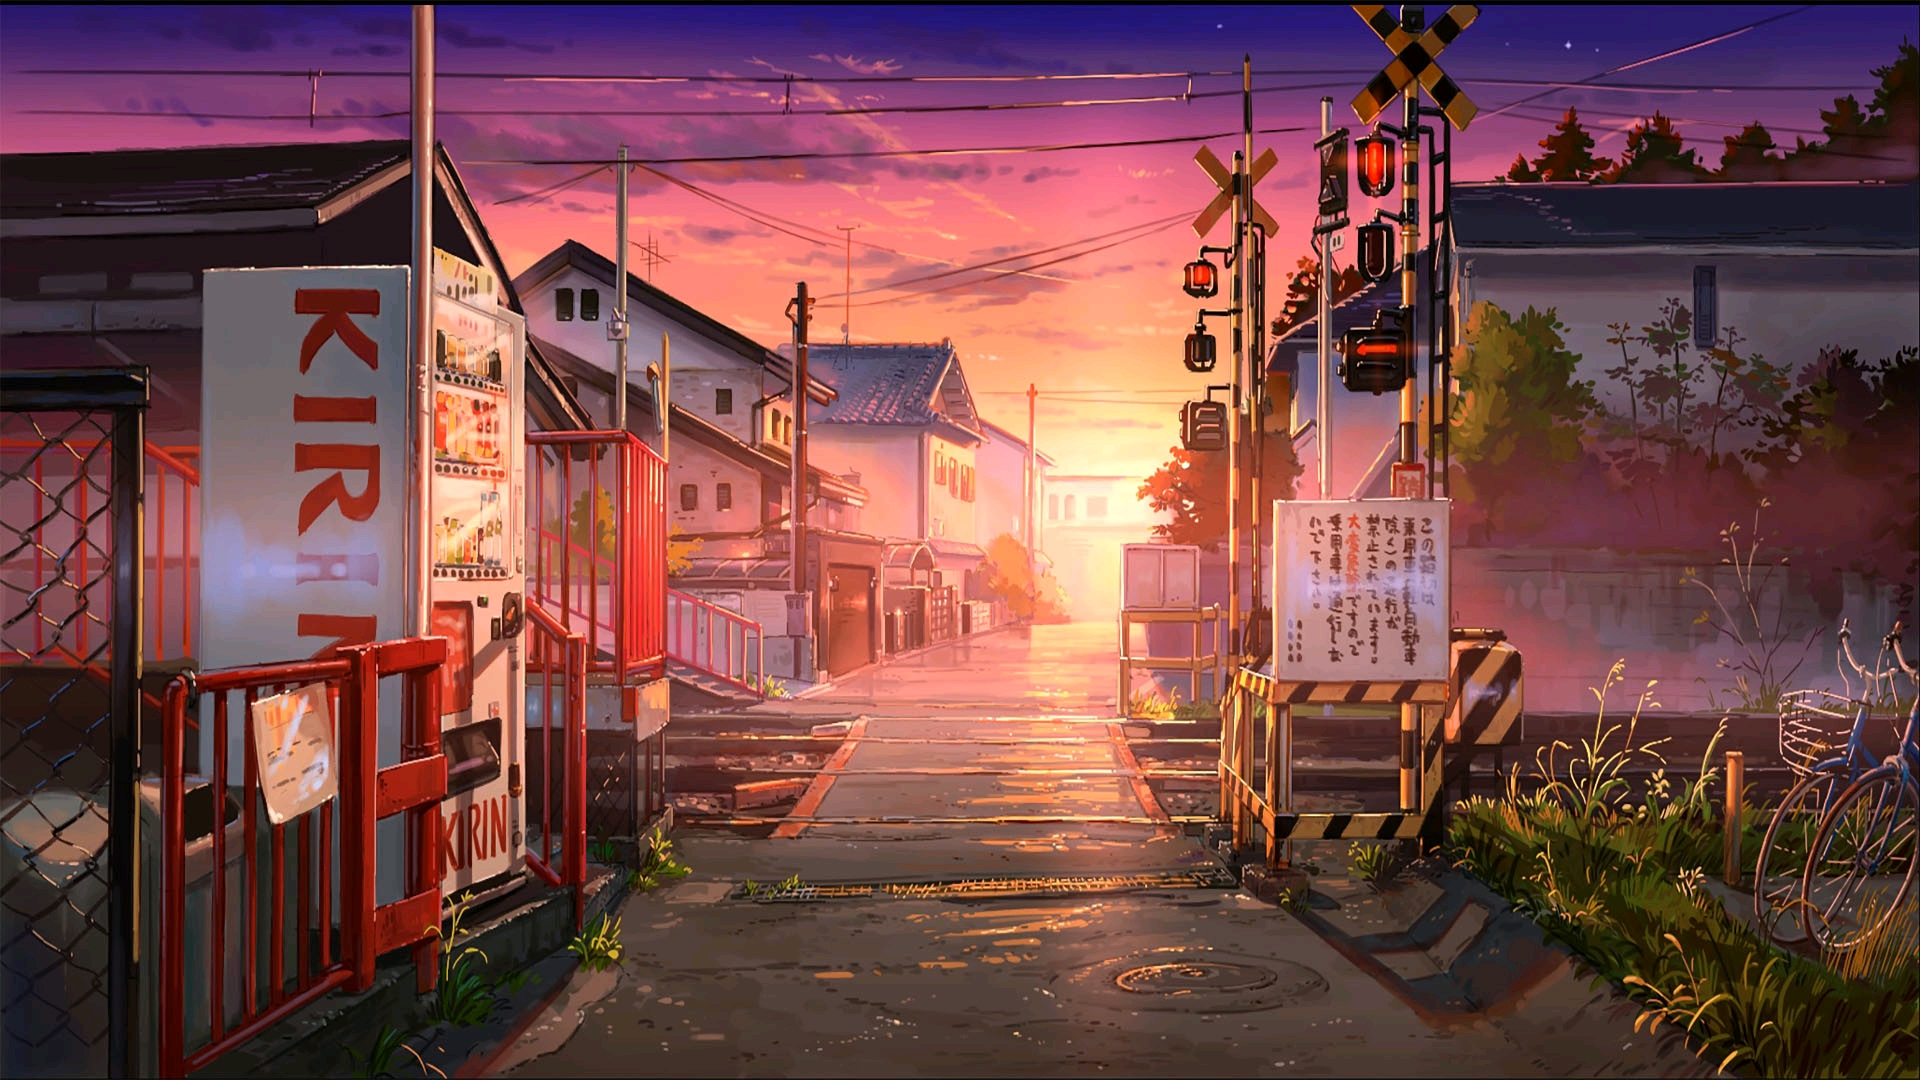 【夕阳黄昏】唯美画风的二次元动漫风景壁纸【电脑壁纸(六】